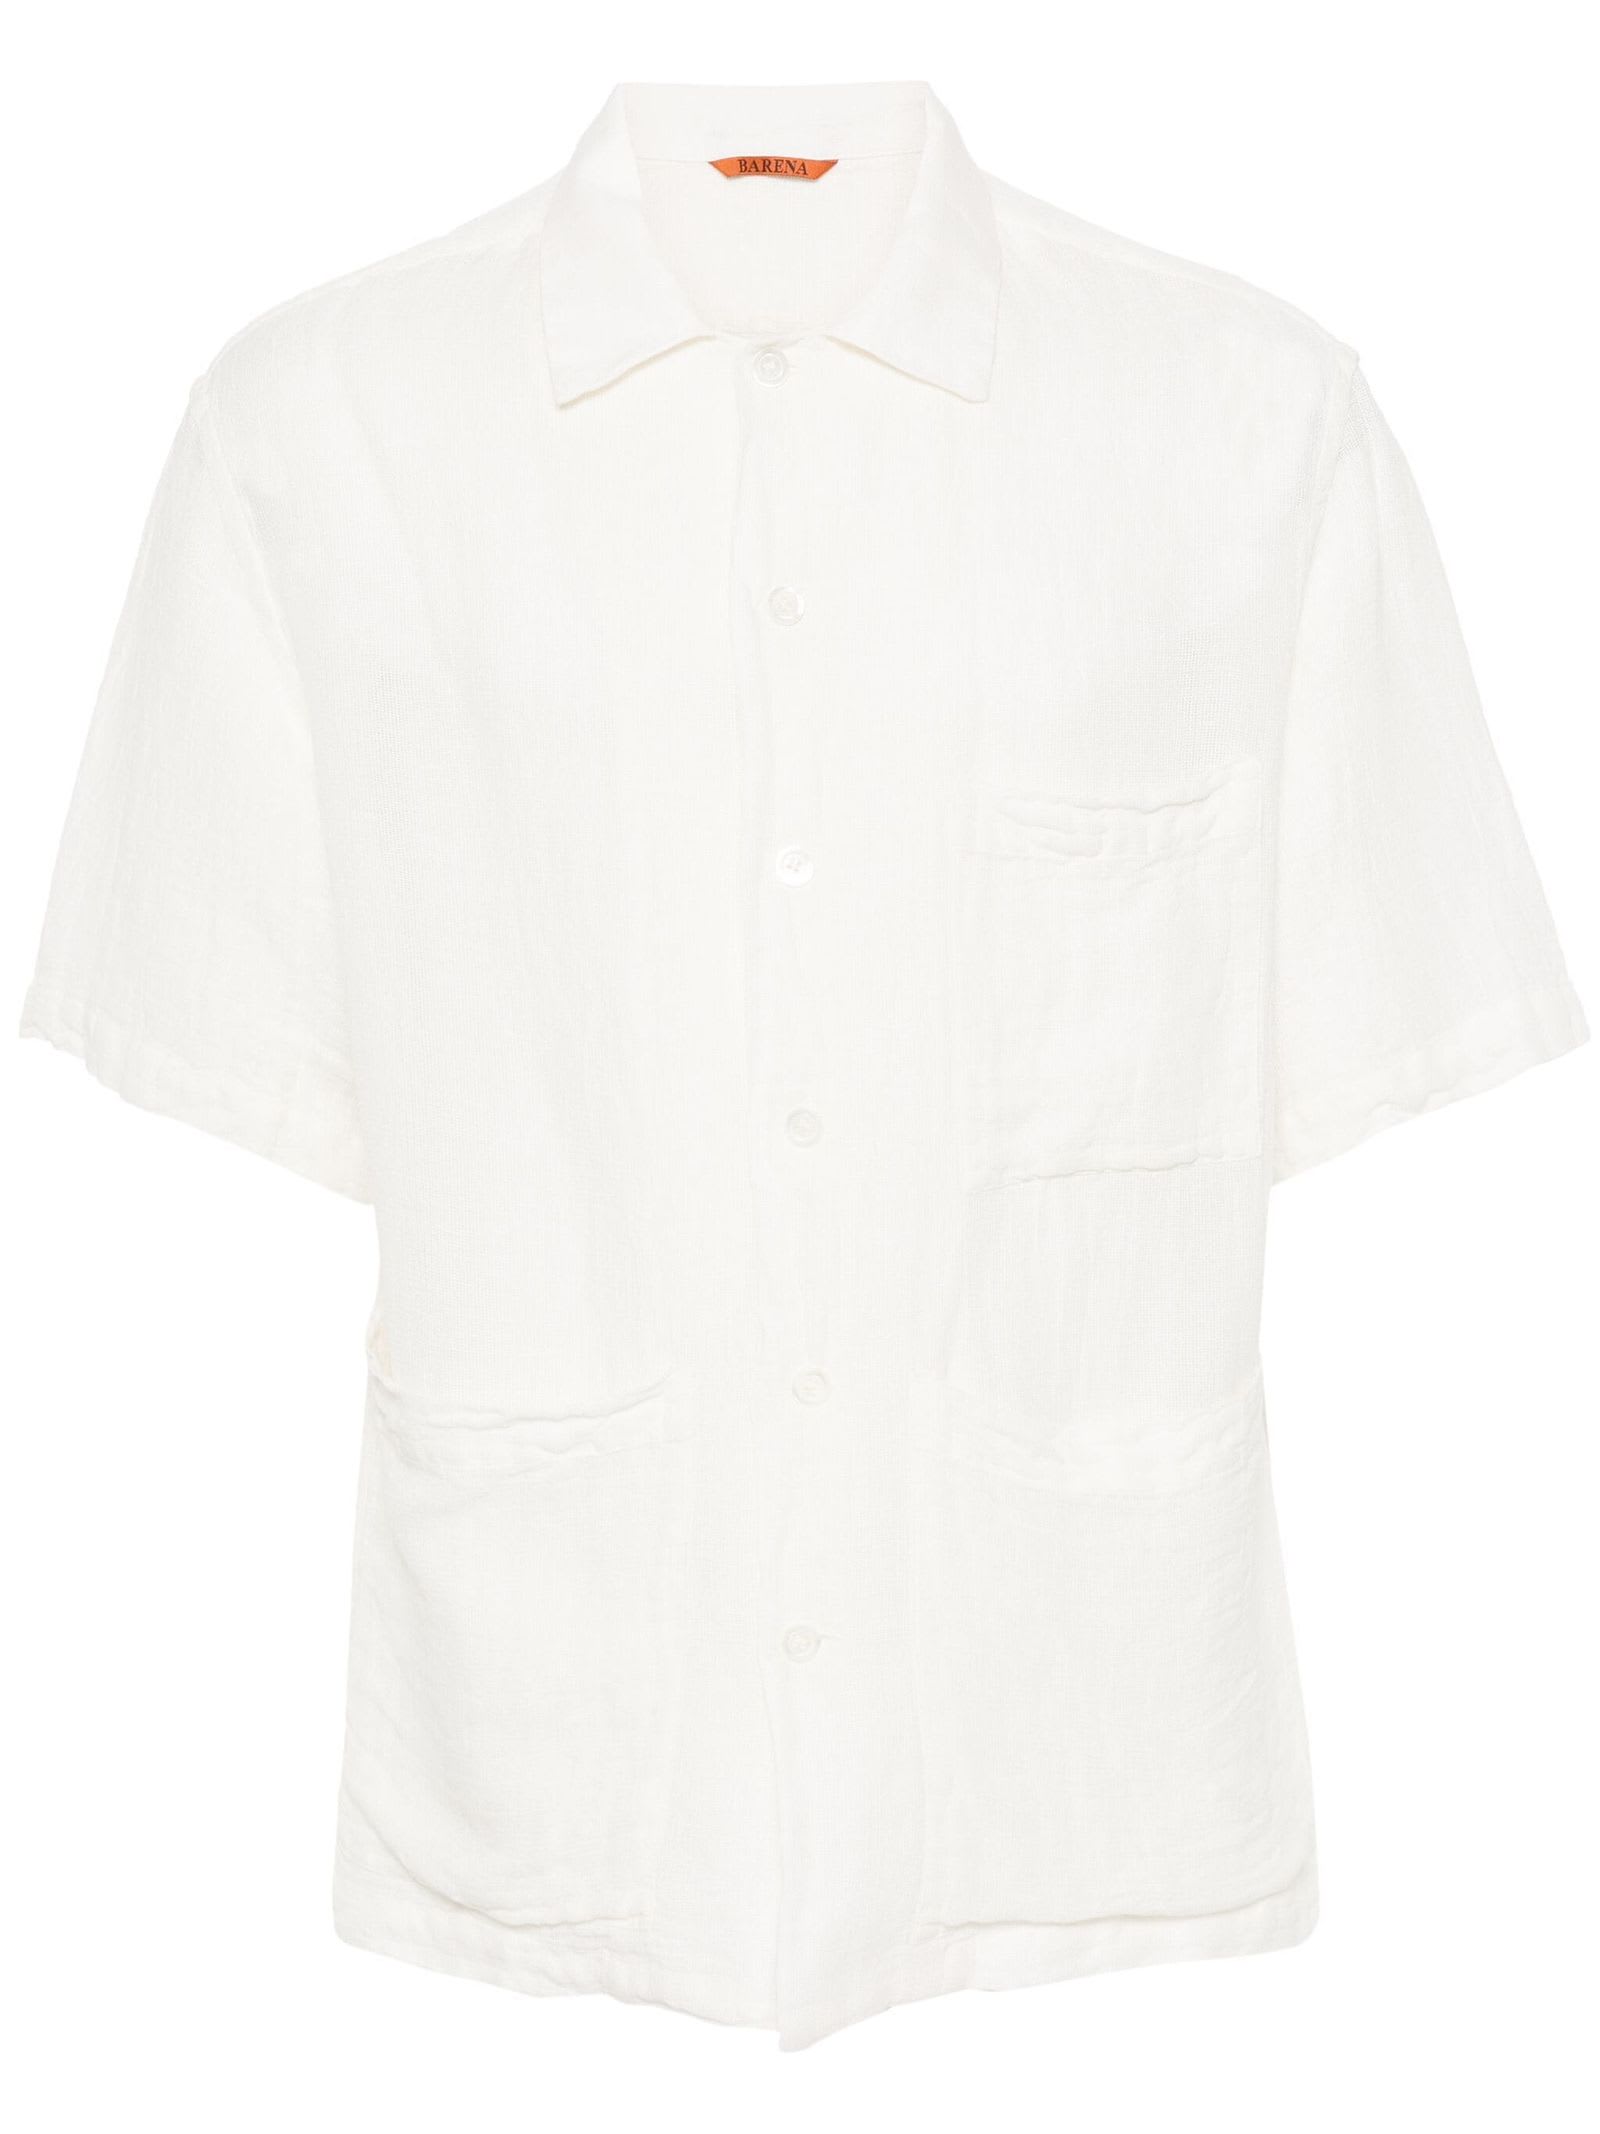 Barena Venezia Barena Shirts White In Bianco